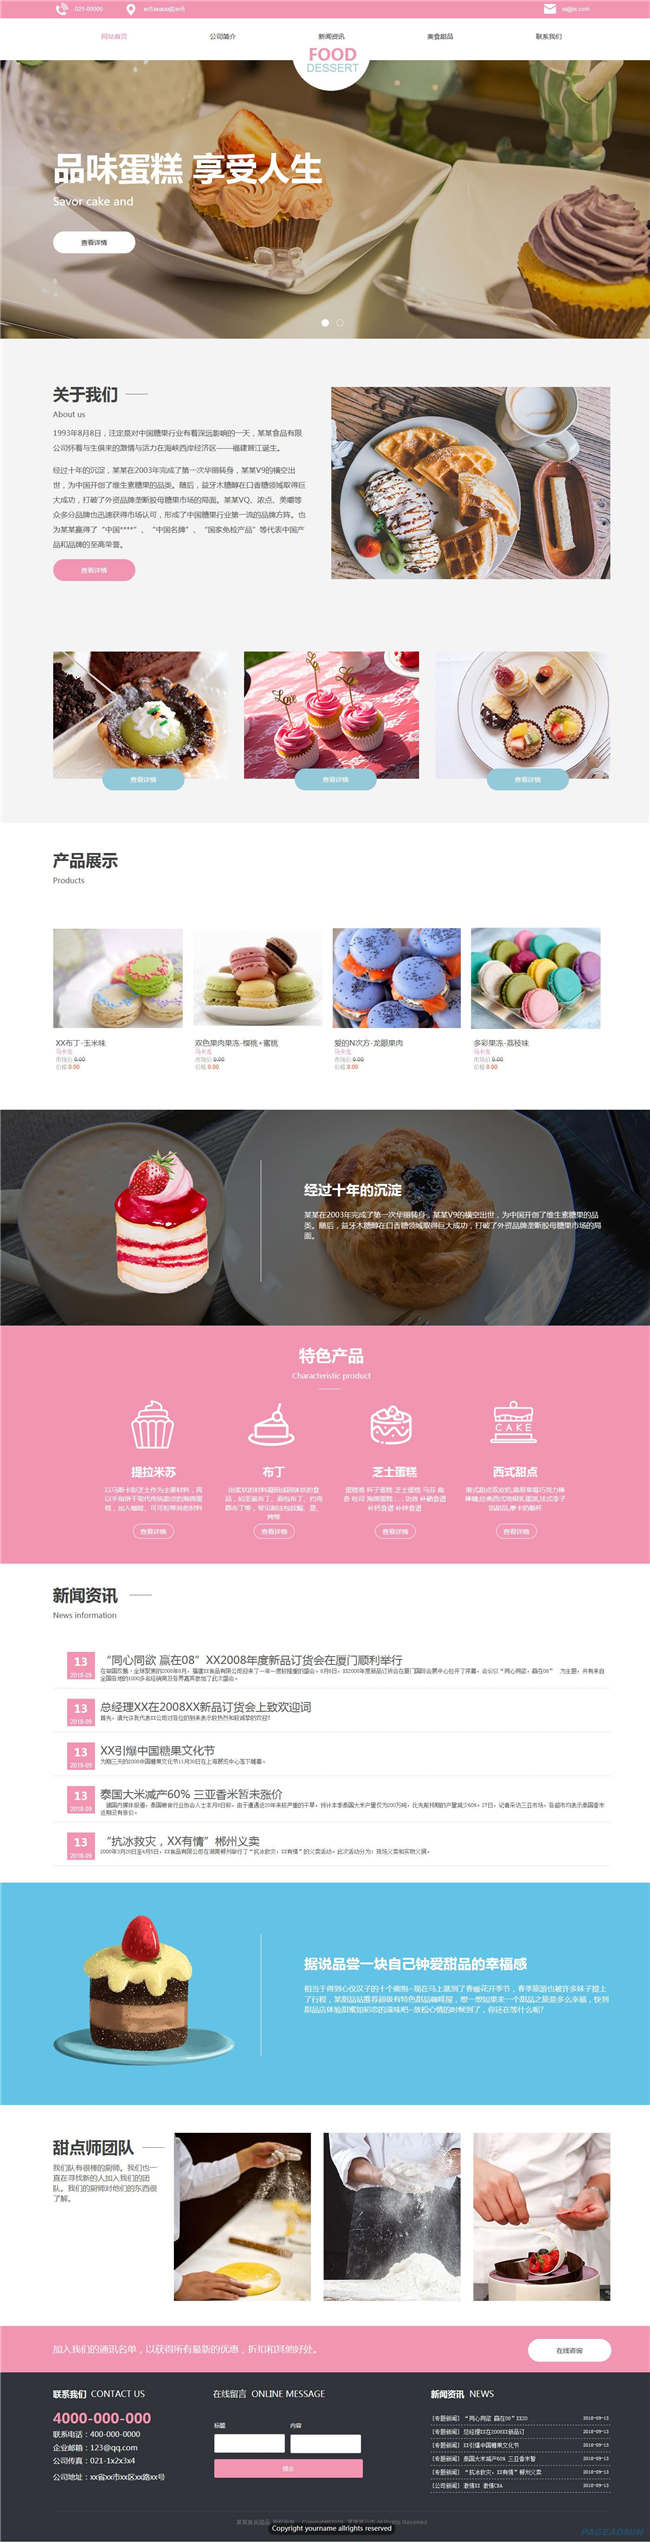 响应式蛋糕店食品饮料生鲜茶酒网站Wordpress模板预览图